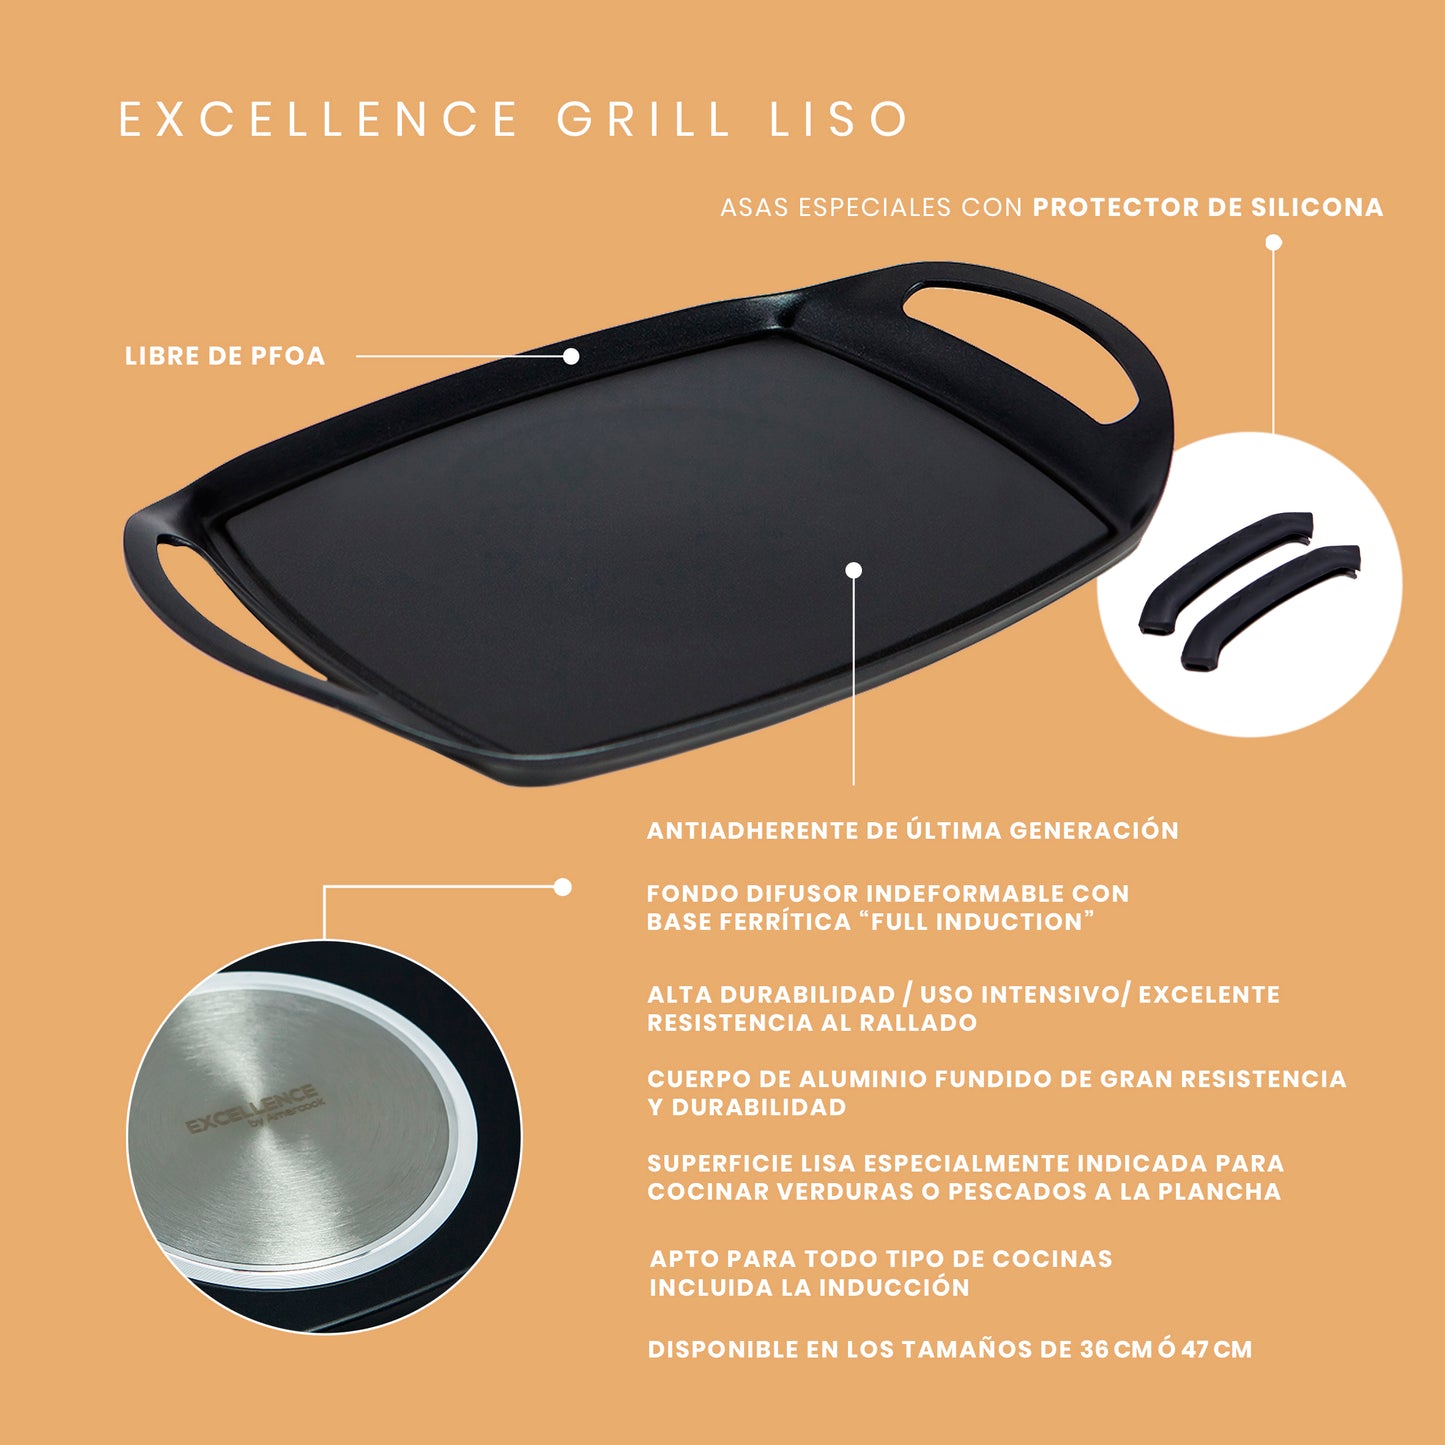 Grill liso Excellence Premium apto para todo tipo de cocinas, incluso inducción